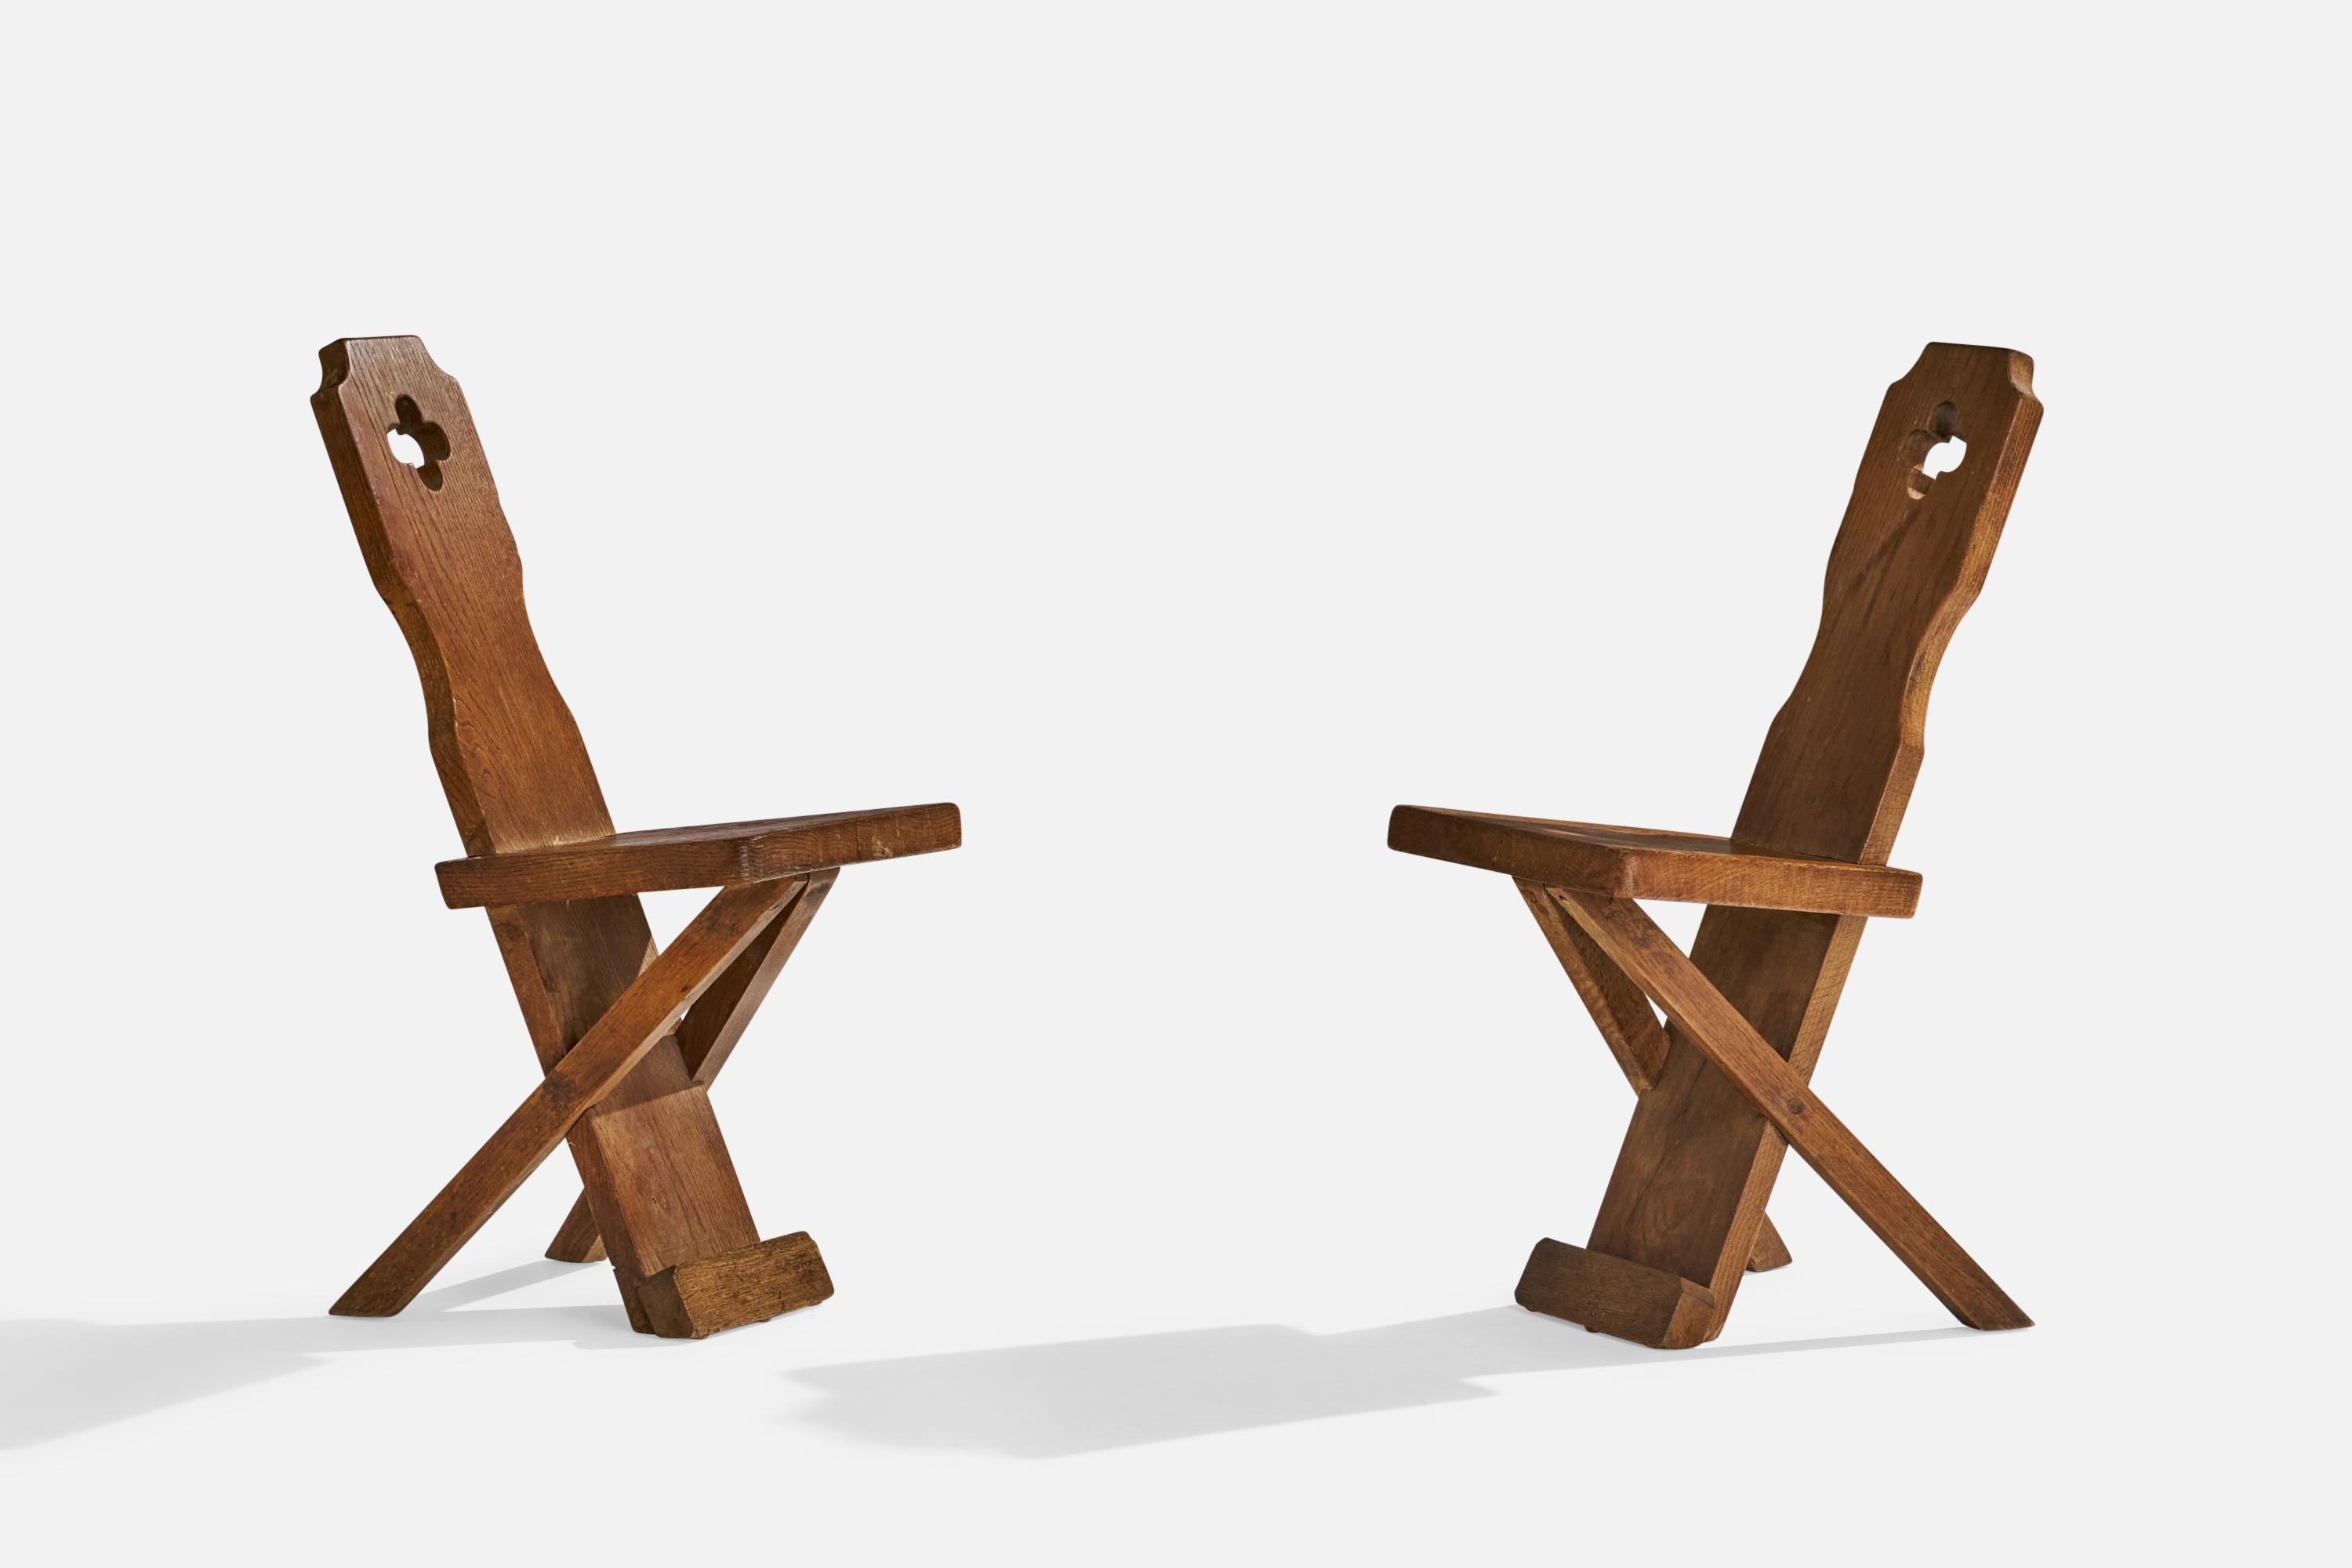 Paire de chaises d'appoint ou de chaises de salle à manger en chêne, conçues et fabriquées au Danemark, vers les années 1920.

Hauteur d'assise 18